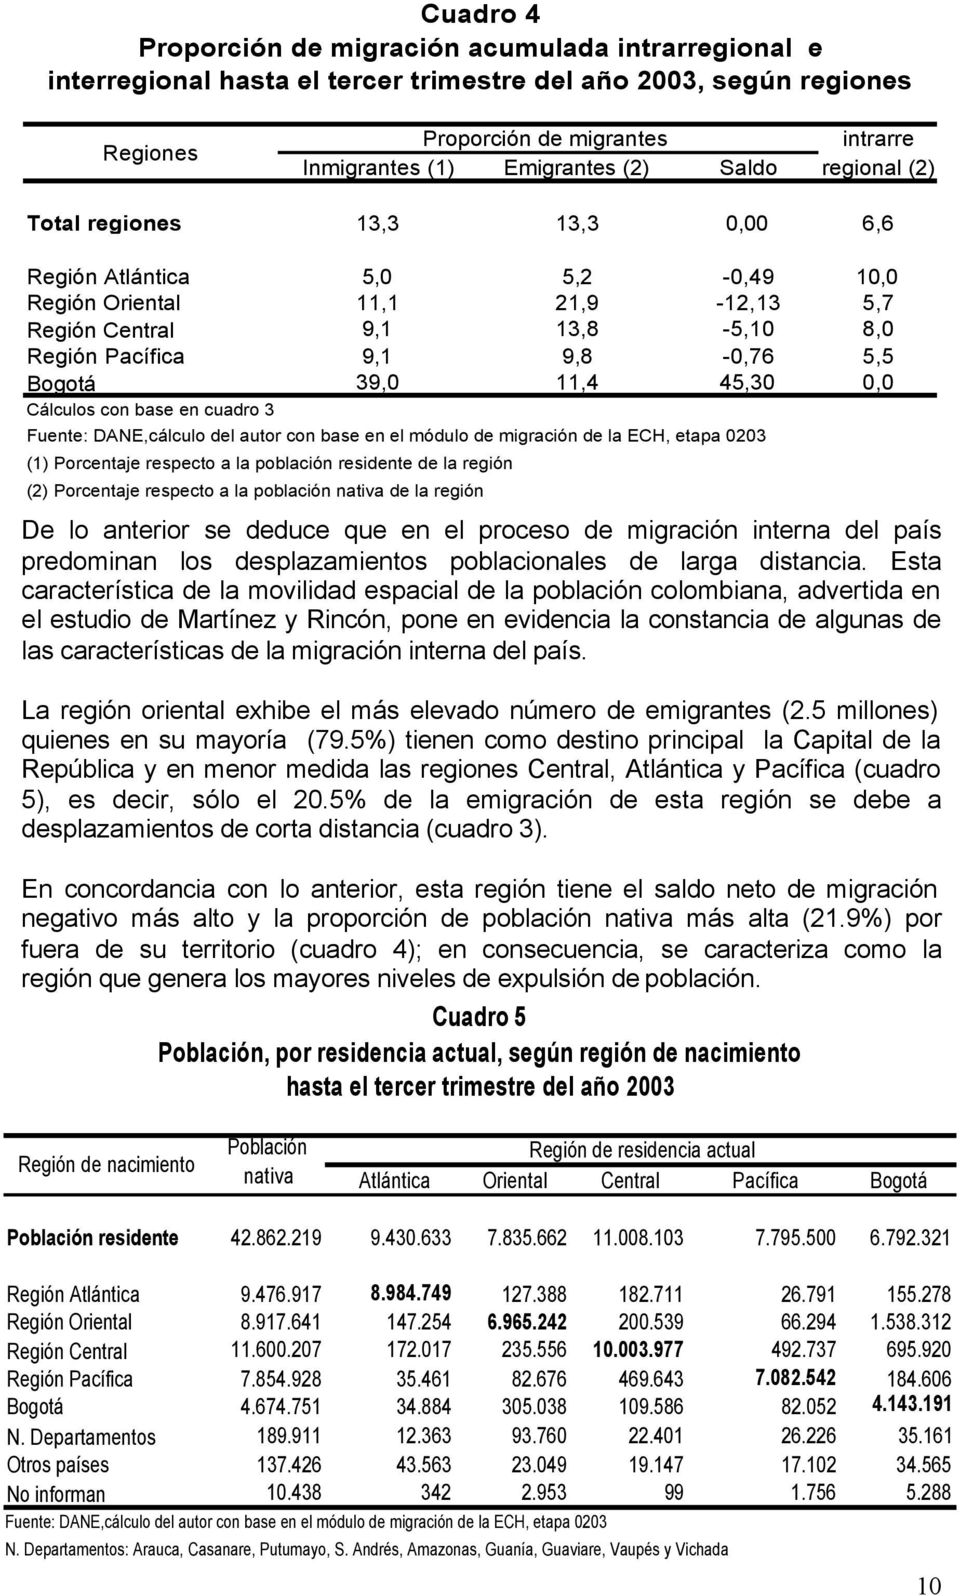 Bogotá 39,0 11,4 45,30 0,0 Cálculos con base en cuadro 3 Fuente: DANE,cálculo del autor con base en el módulo de migración de la ECH, etapa 0203 (1) Porcentaje respecto a la población residente de la